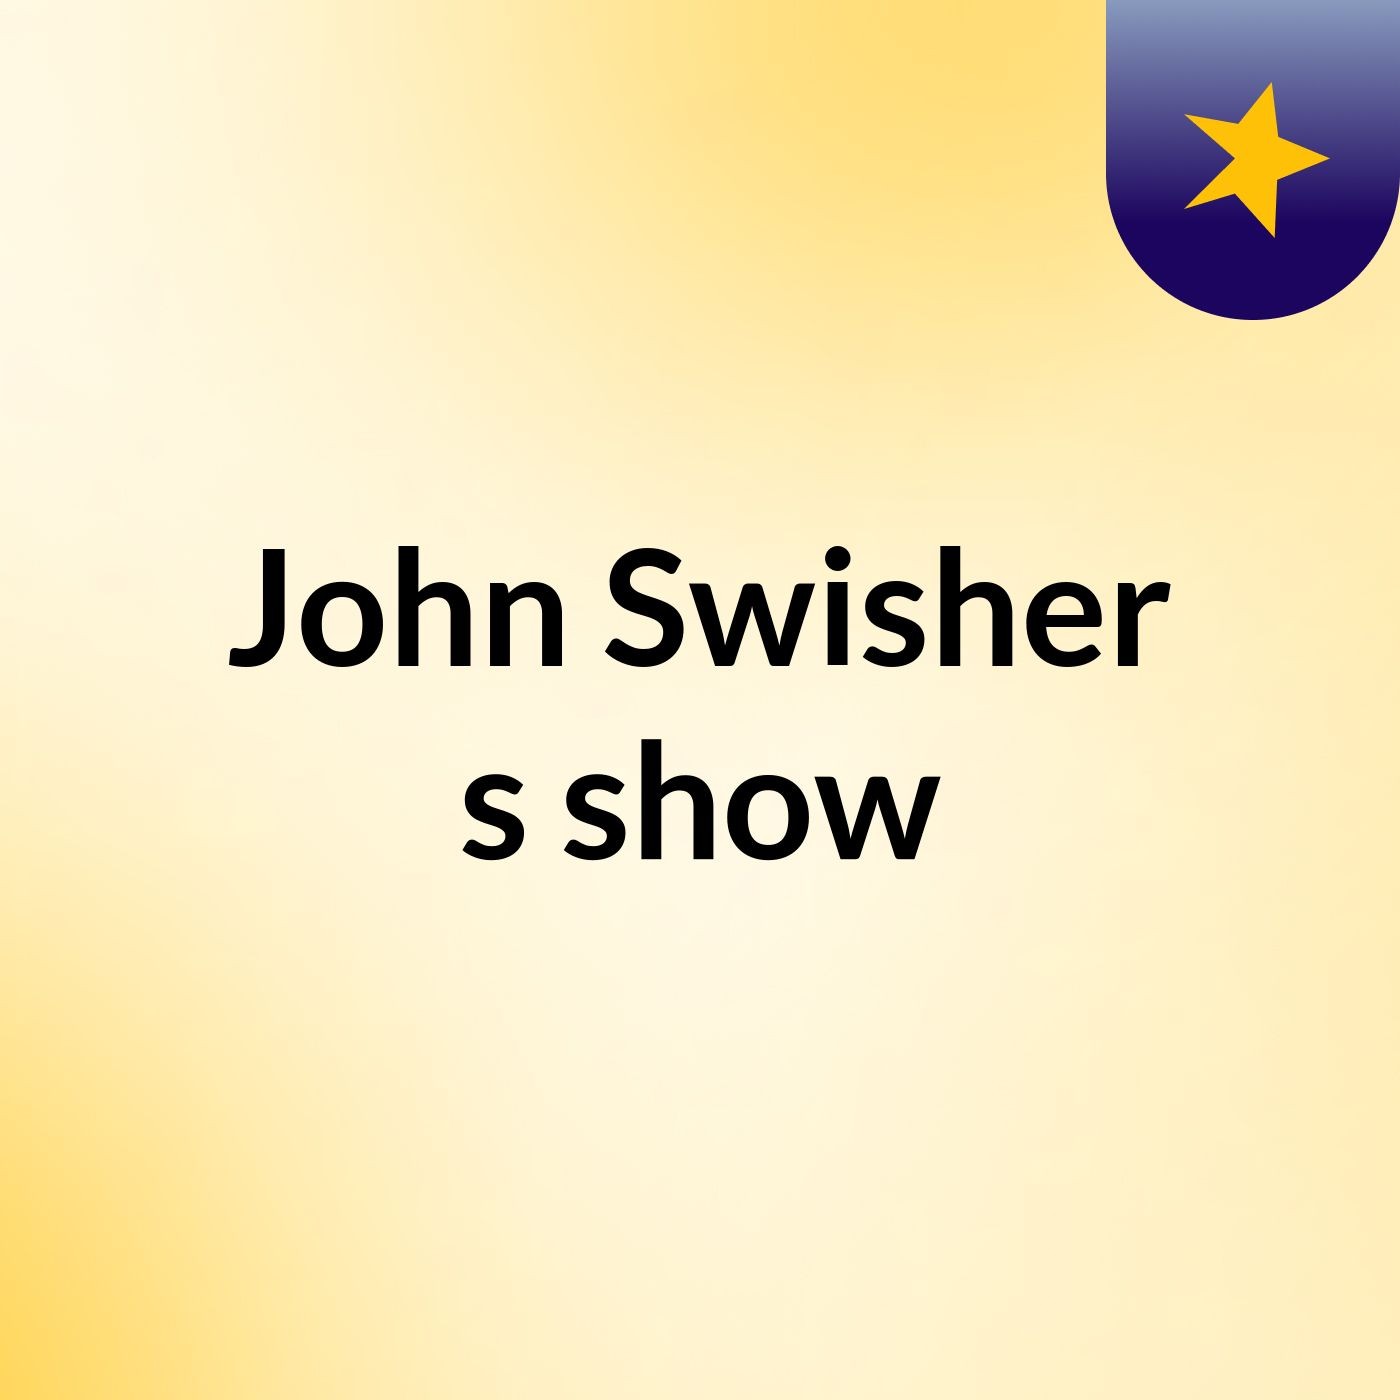 John Swisher's show